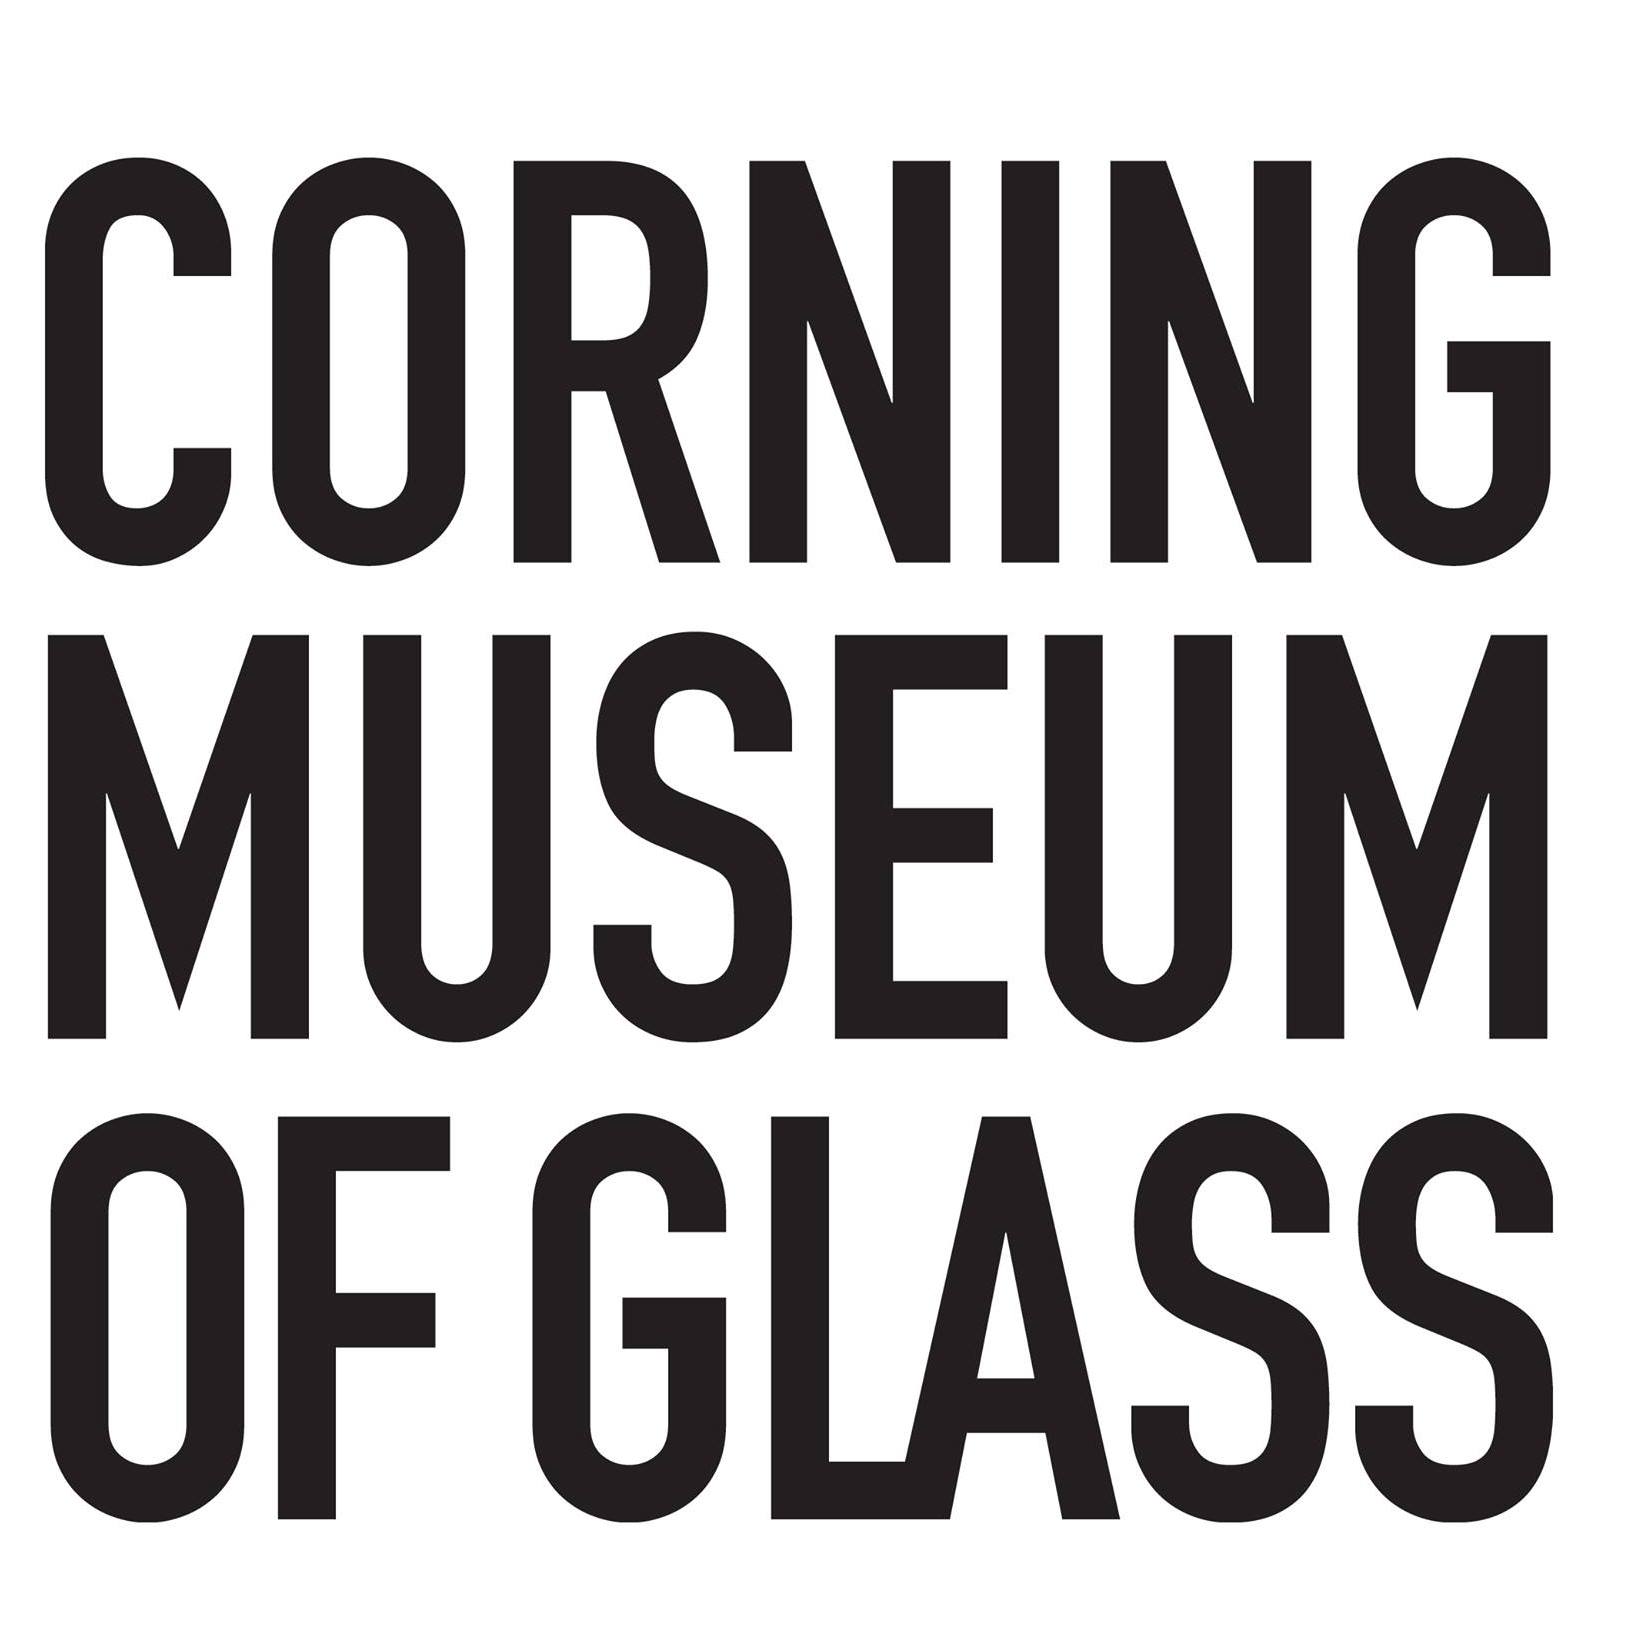 The Corning Museum of Glass - blendnewyork